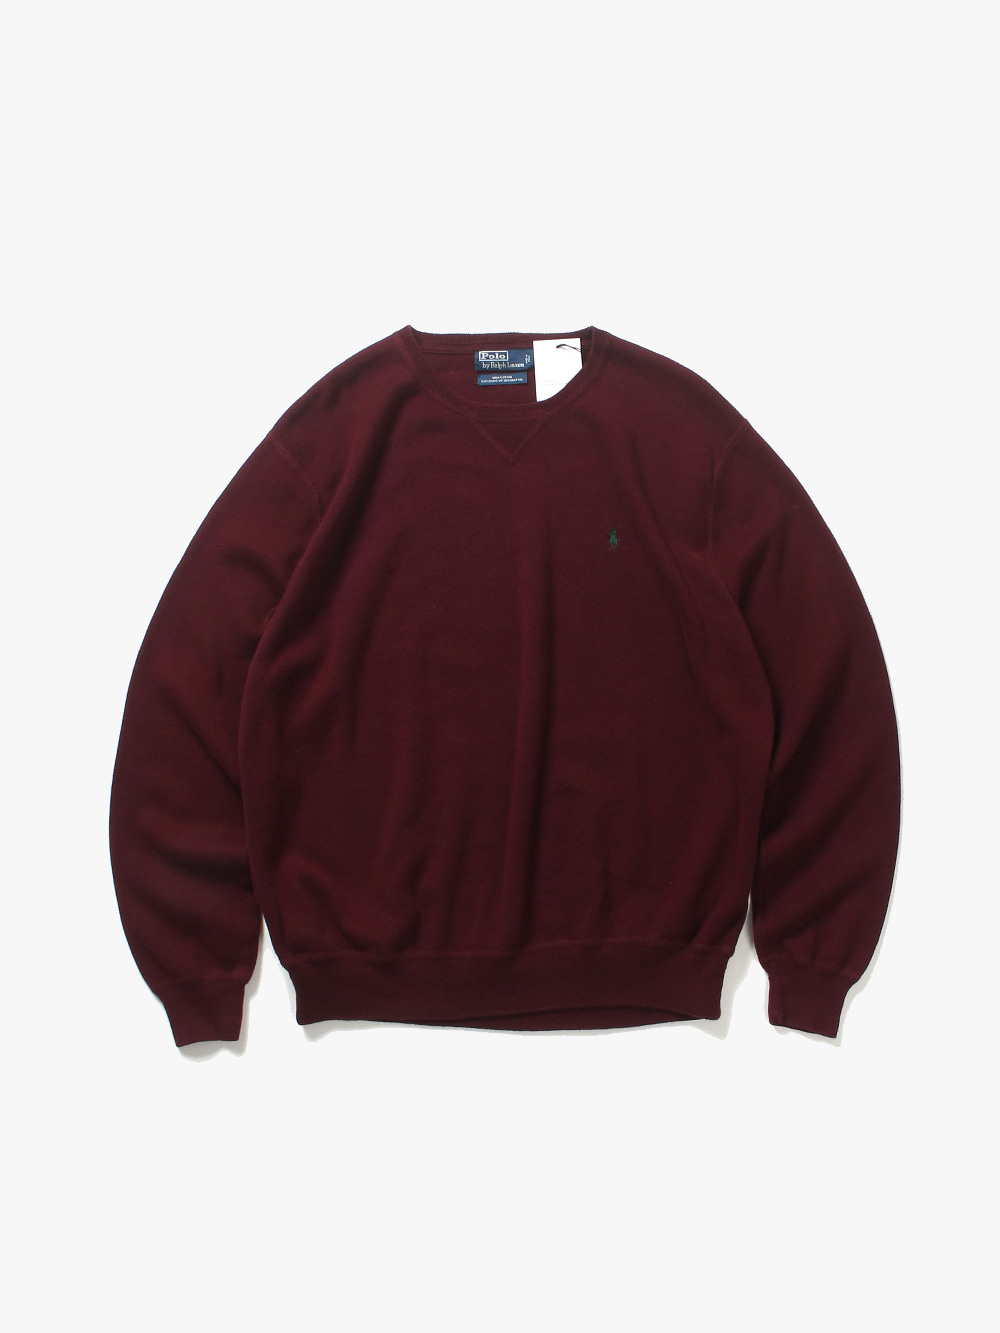 [ XXL ] Polo Ralph Lauren Sweater (6451)